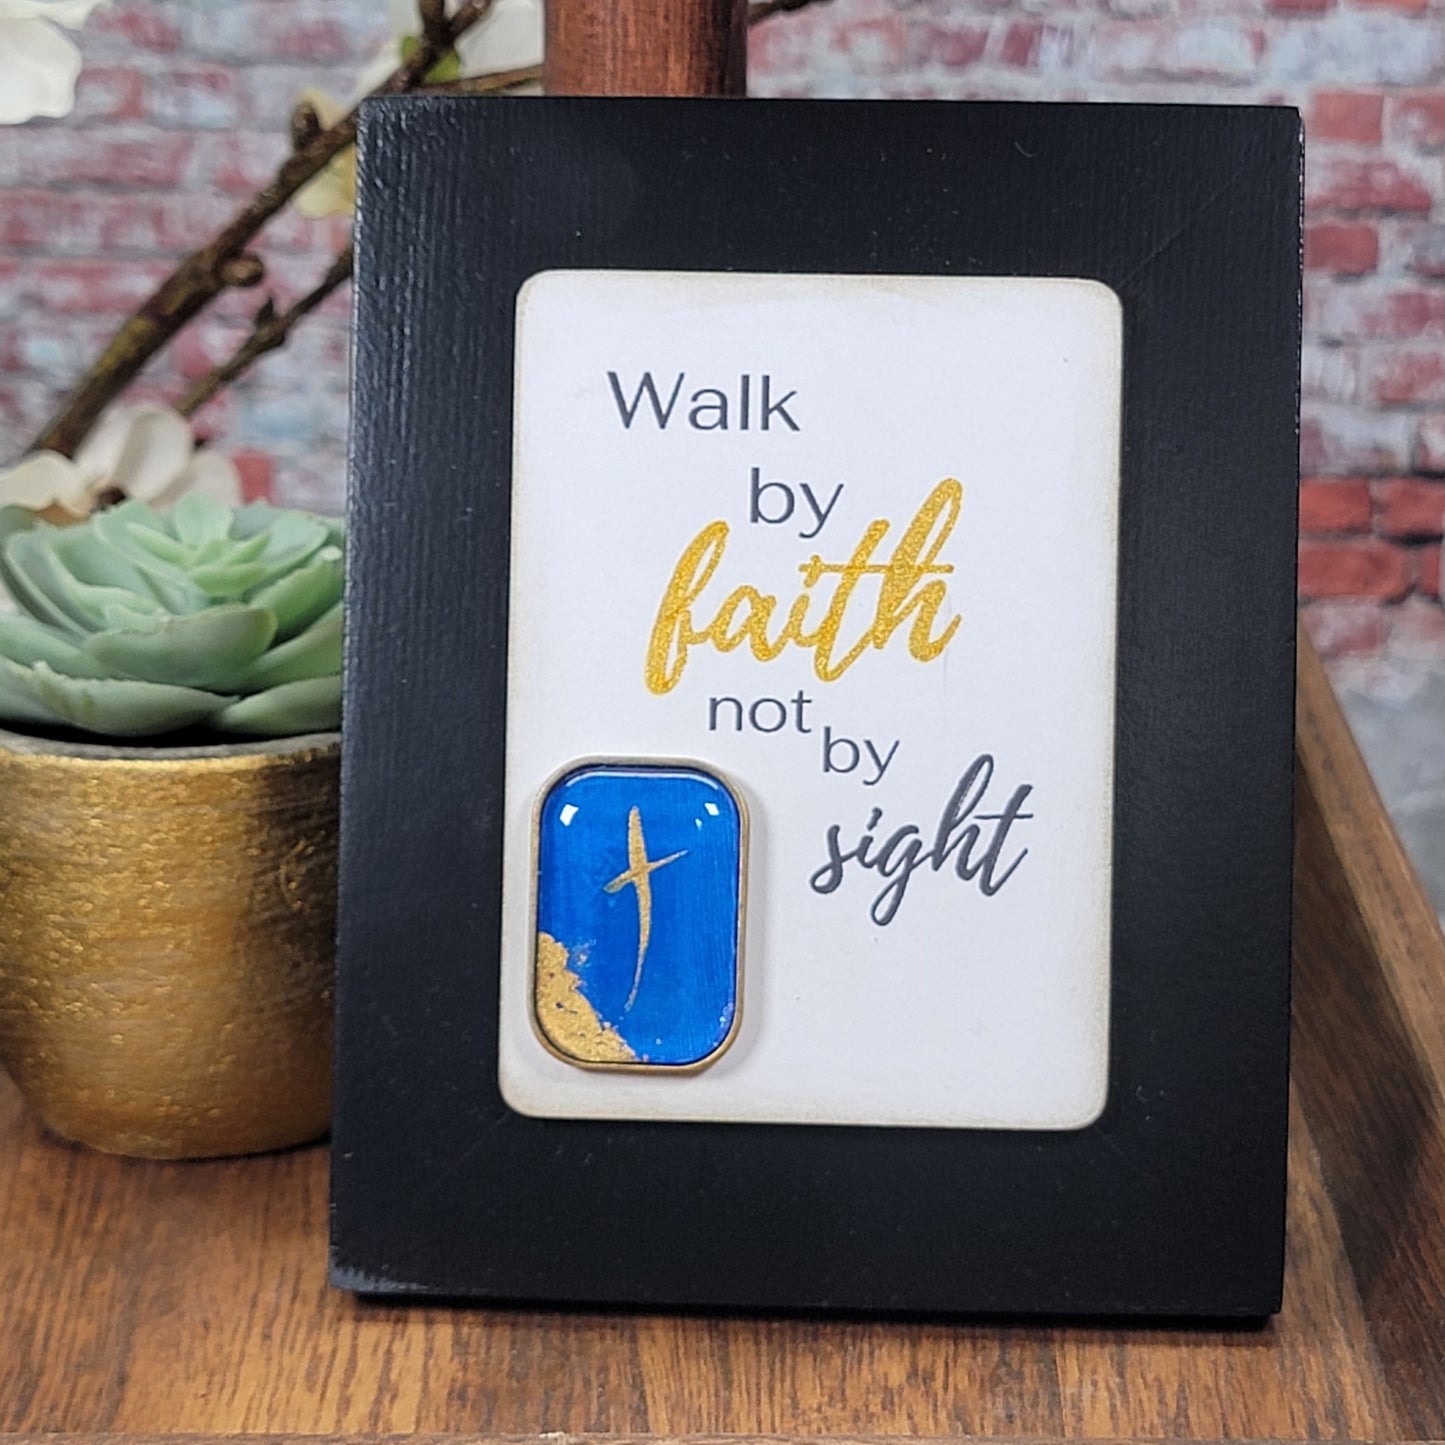 Walk by faith not by sight - Mini Frame